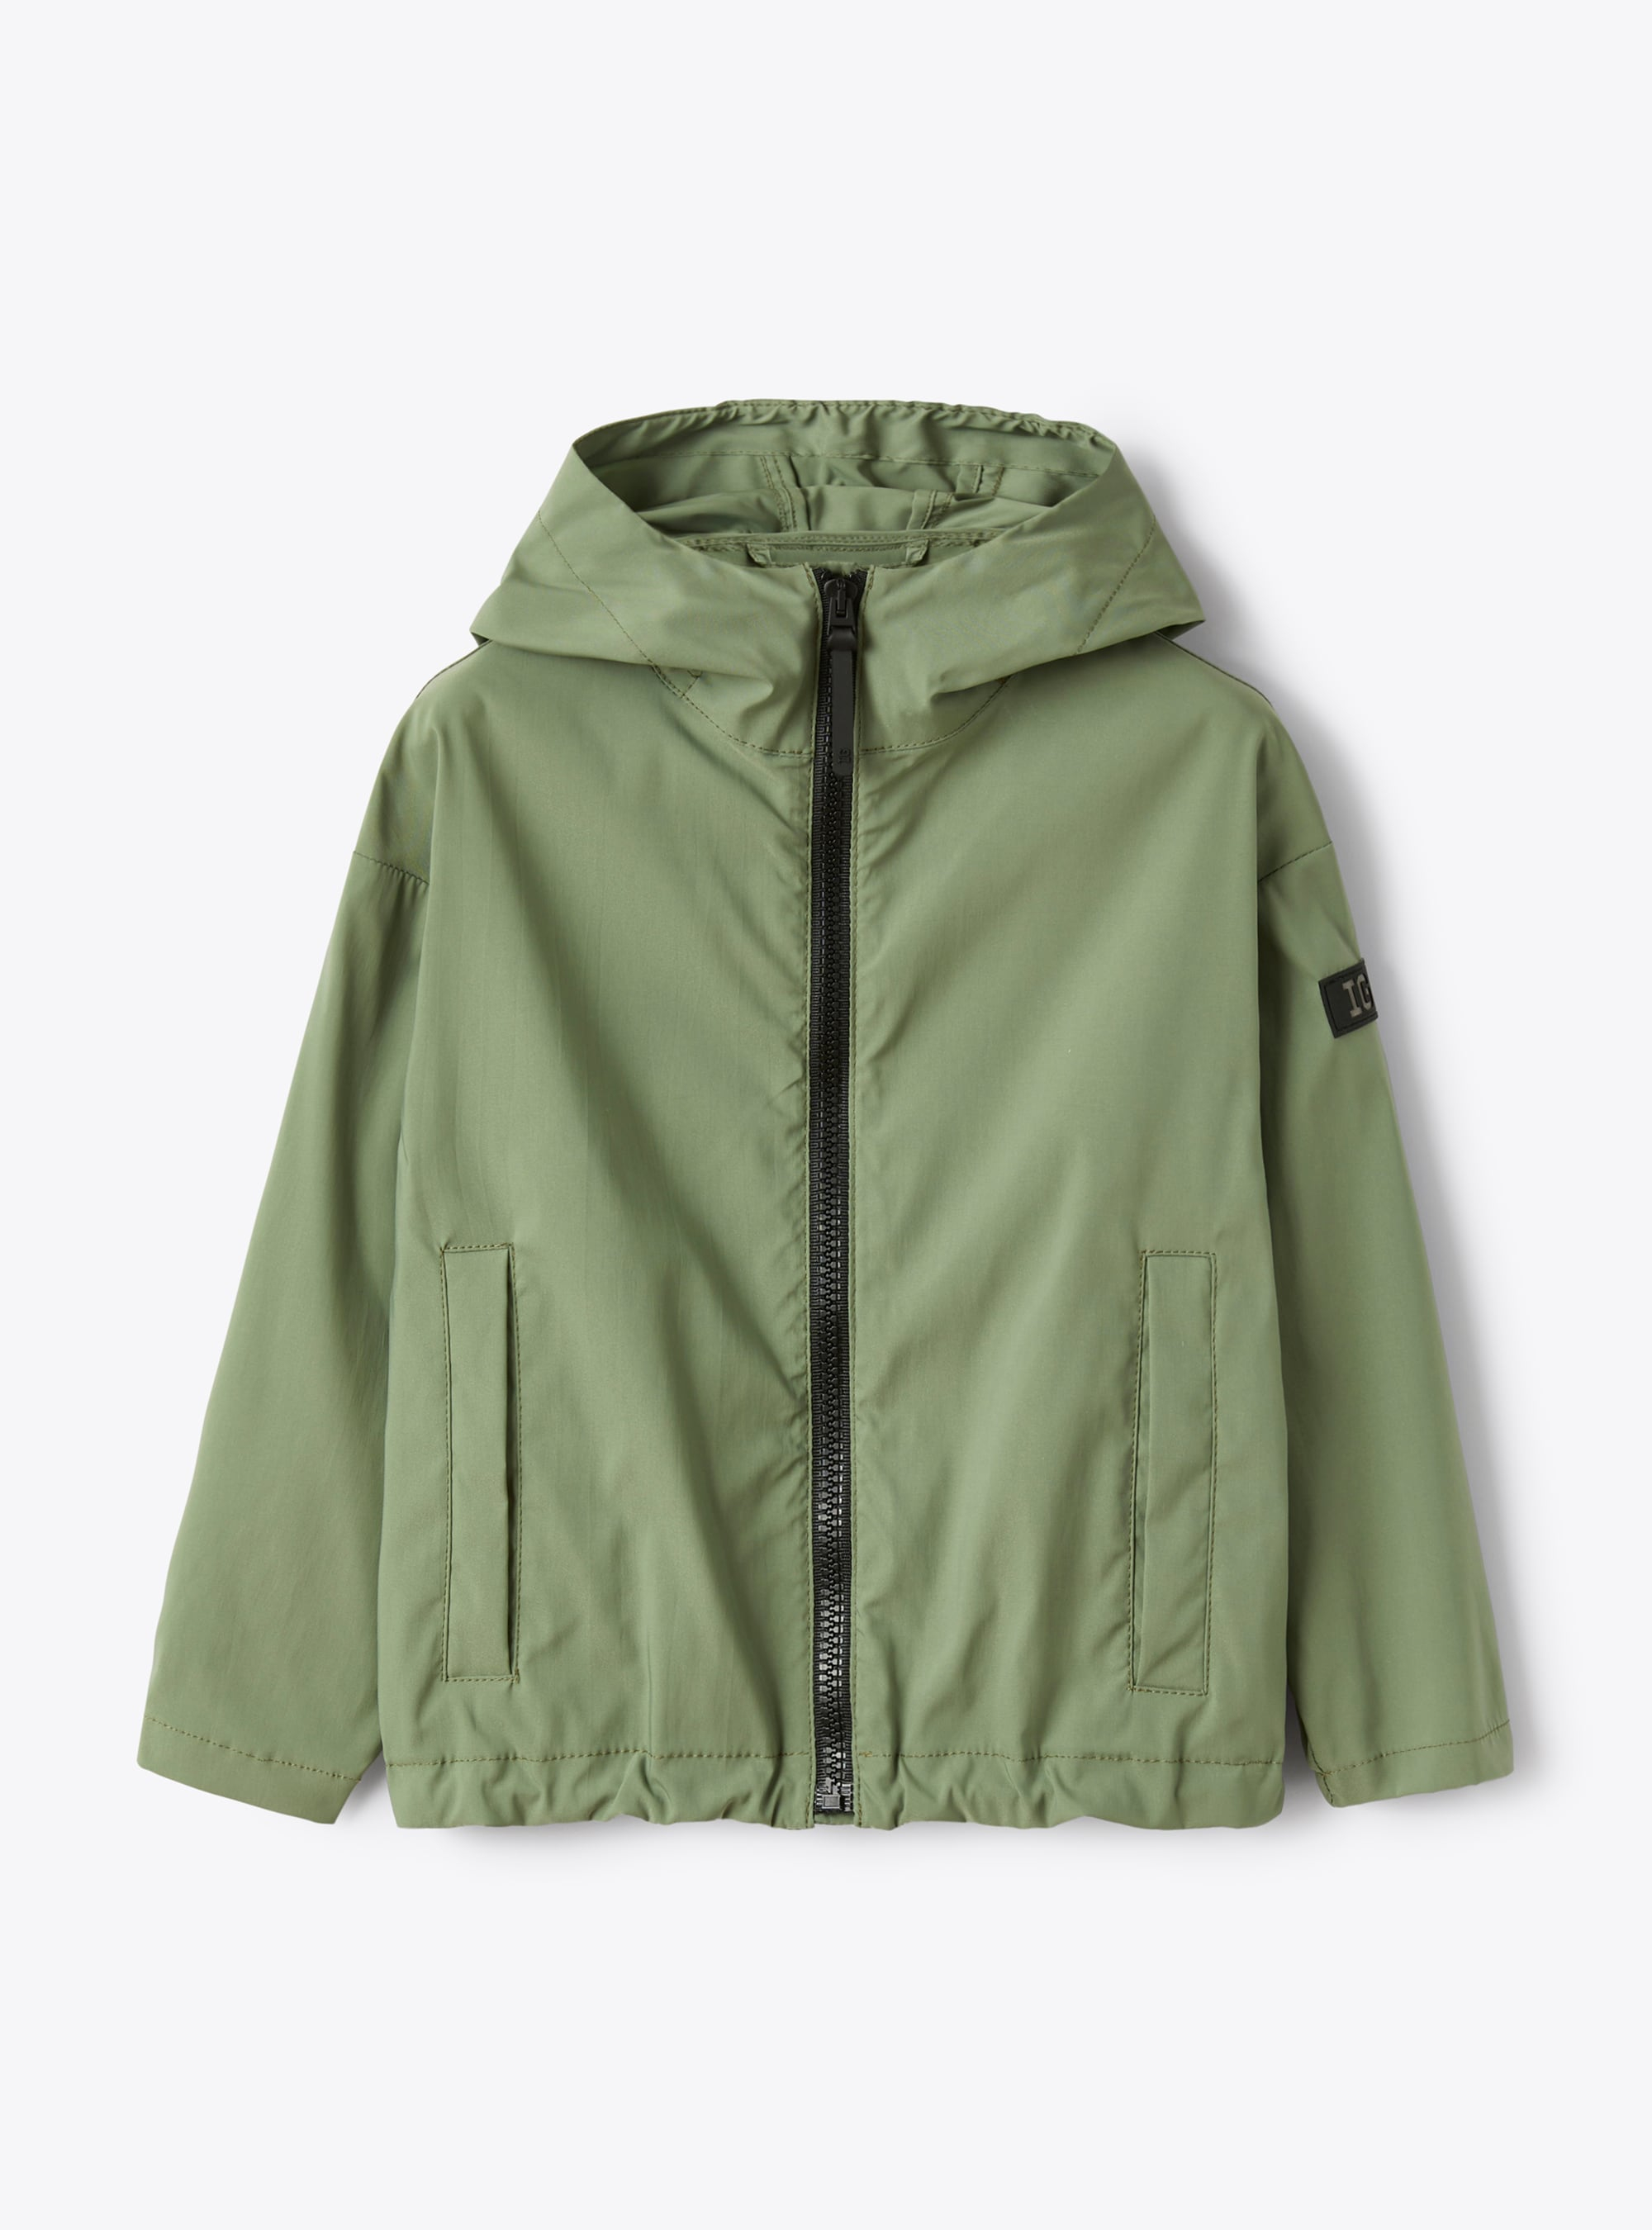 Куртка на молнии, из высокотехнологичной ткани - Зеленый | Il Gufo